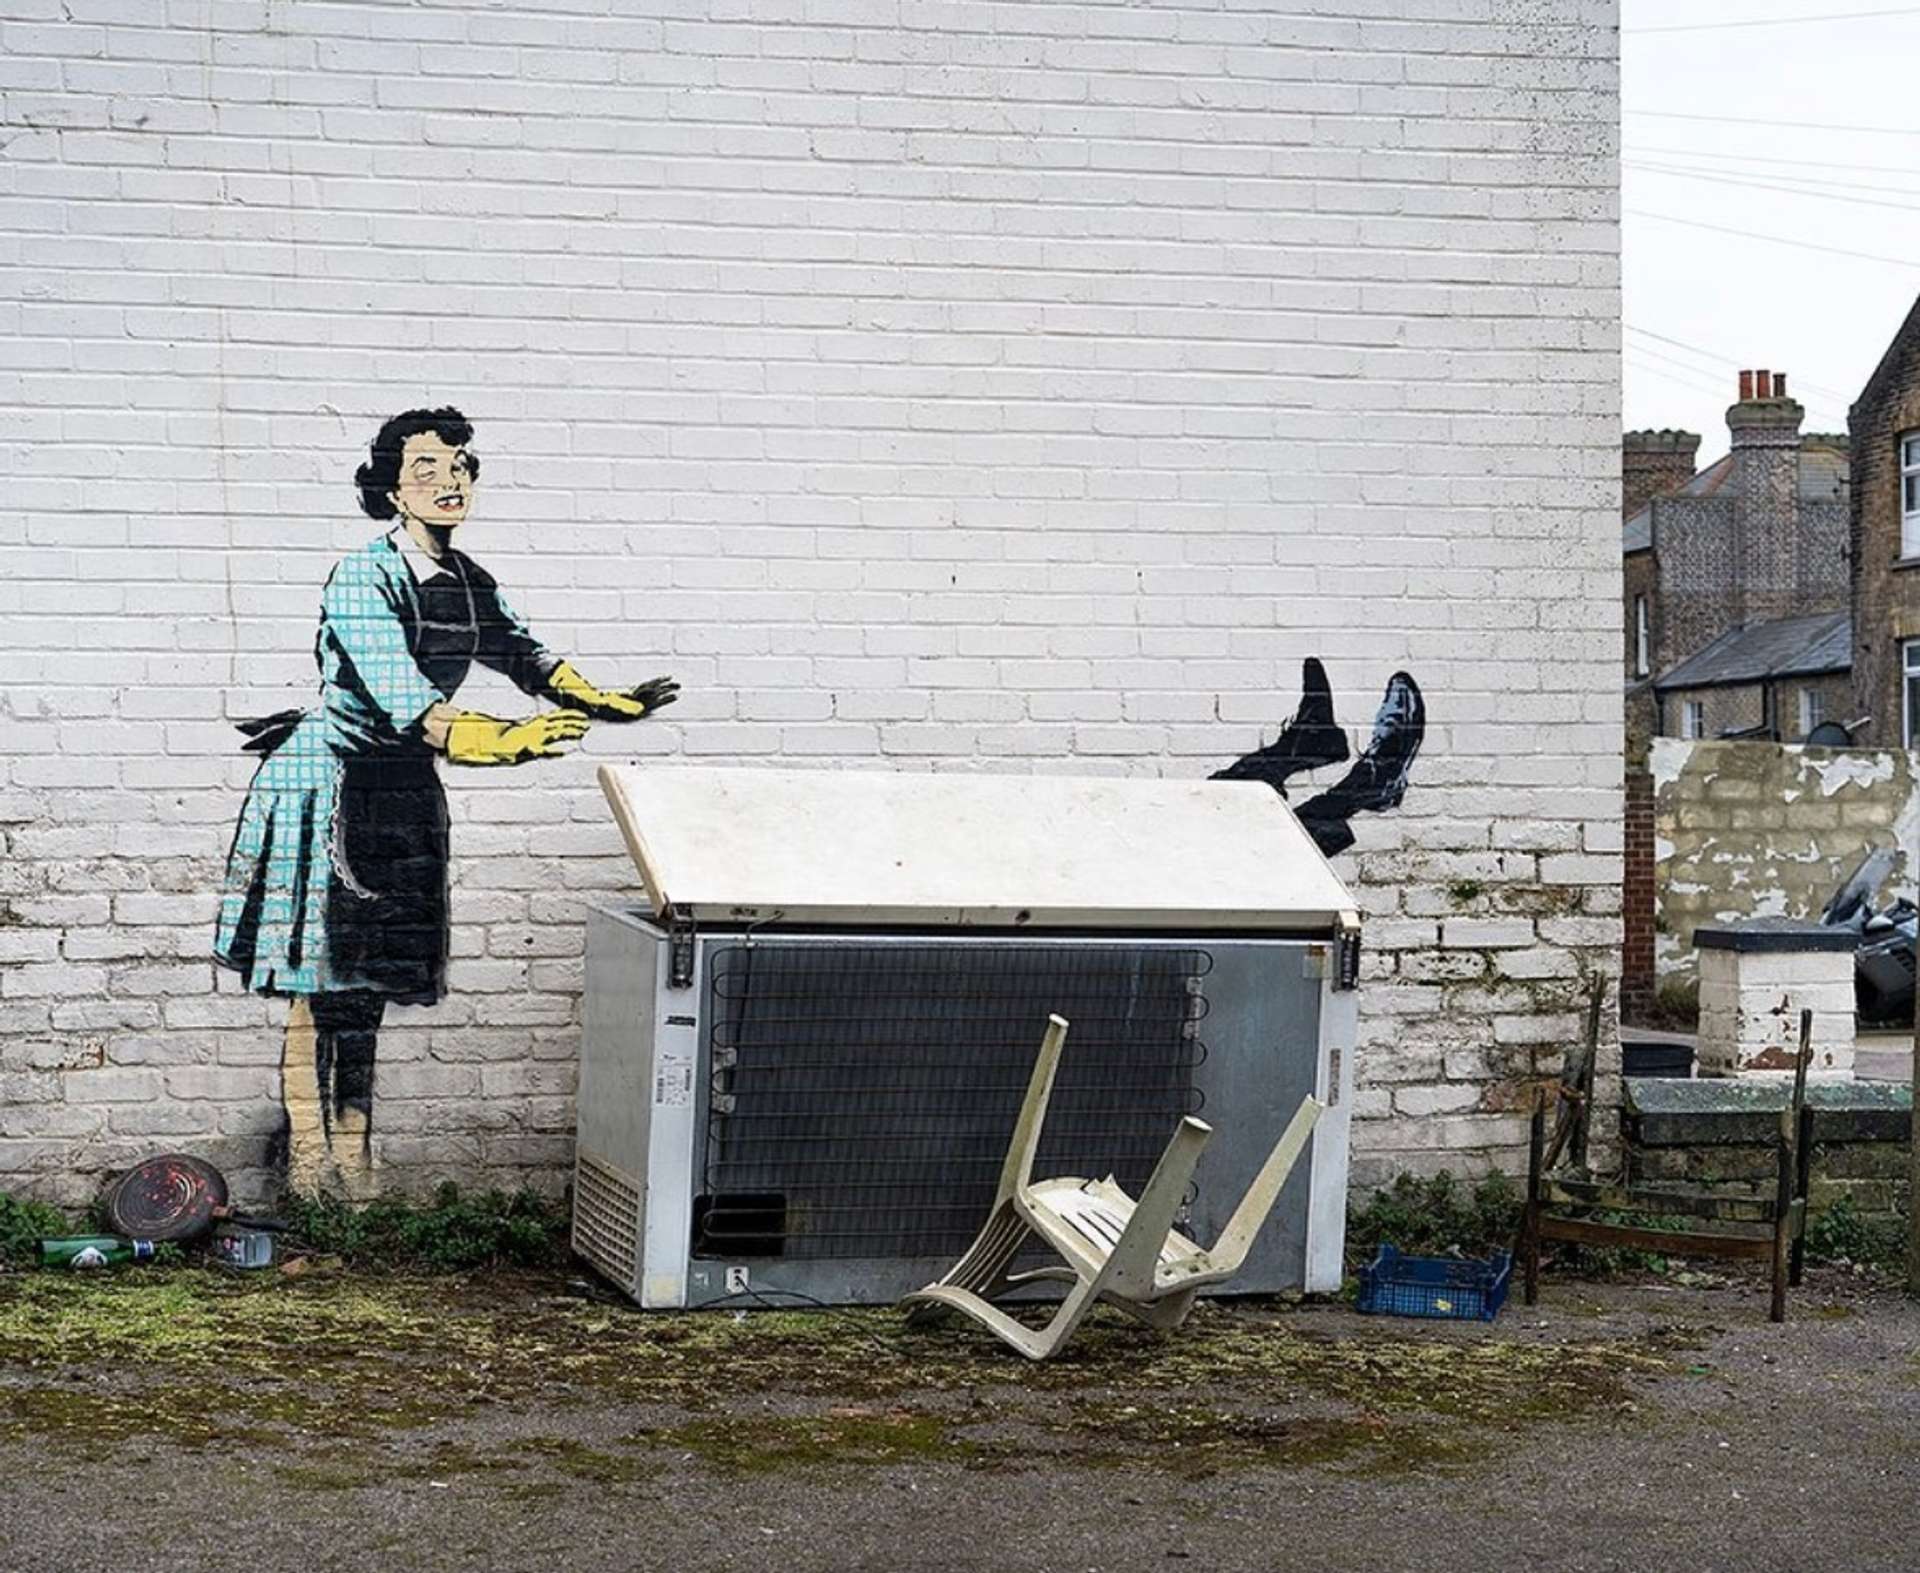 Banksy: Violence vs Innocence